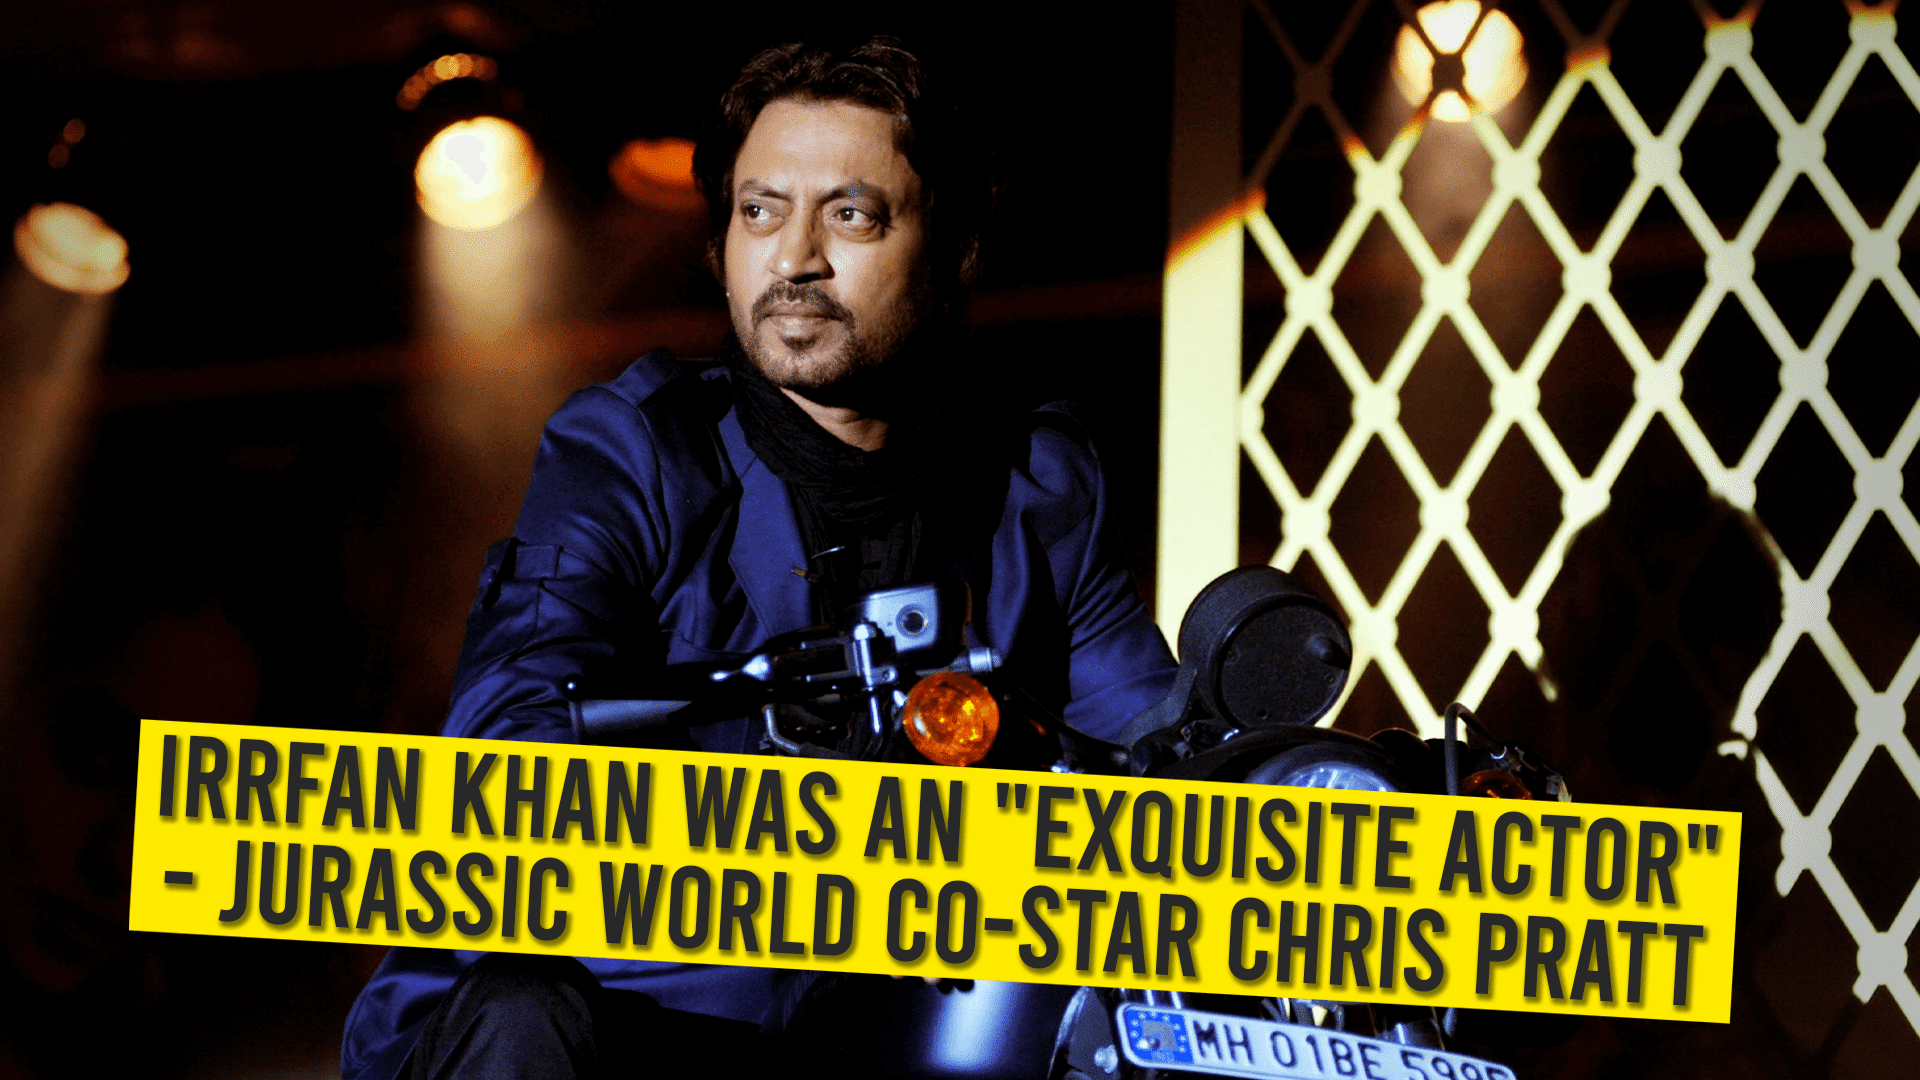 Irrfan Khan Was An “Exquisite Actor”: Jurassic World Co-Star Chris Pratt